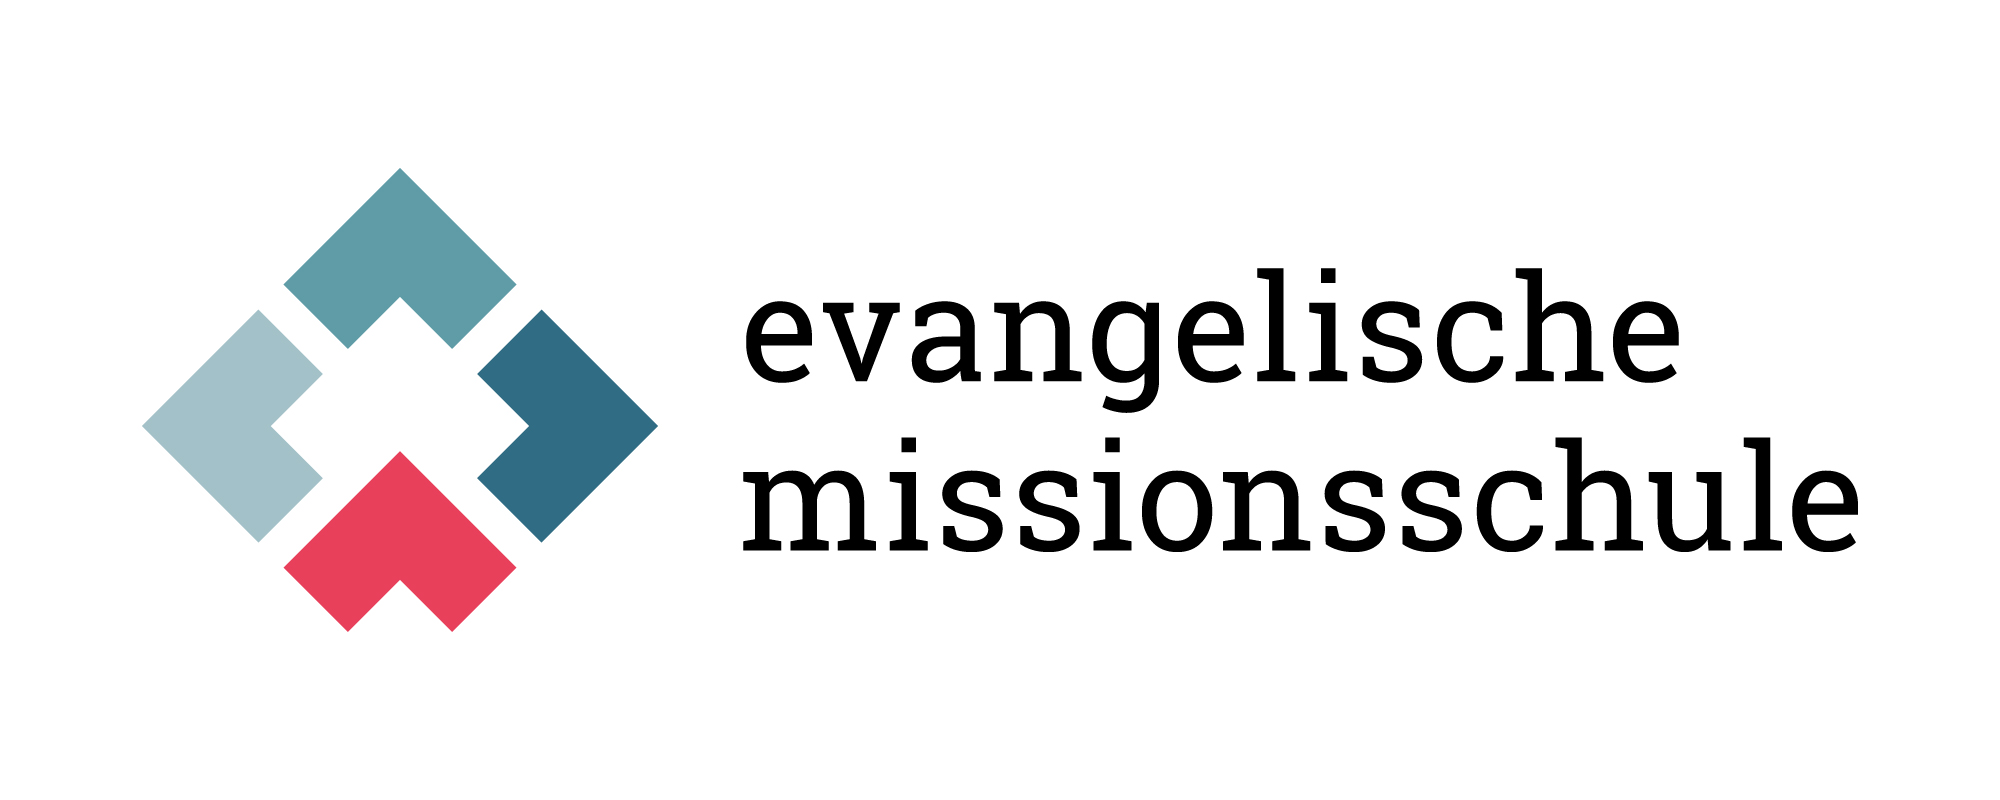 Evangelische Missionsschule Unterweissach